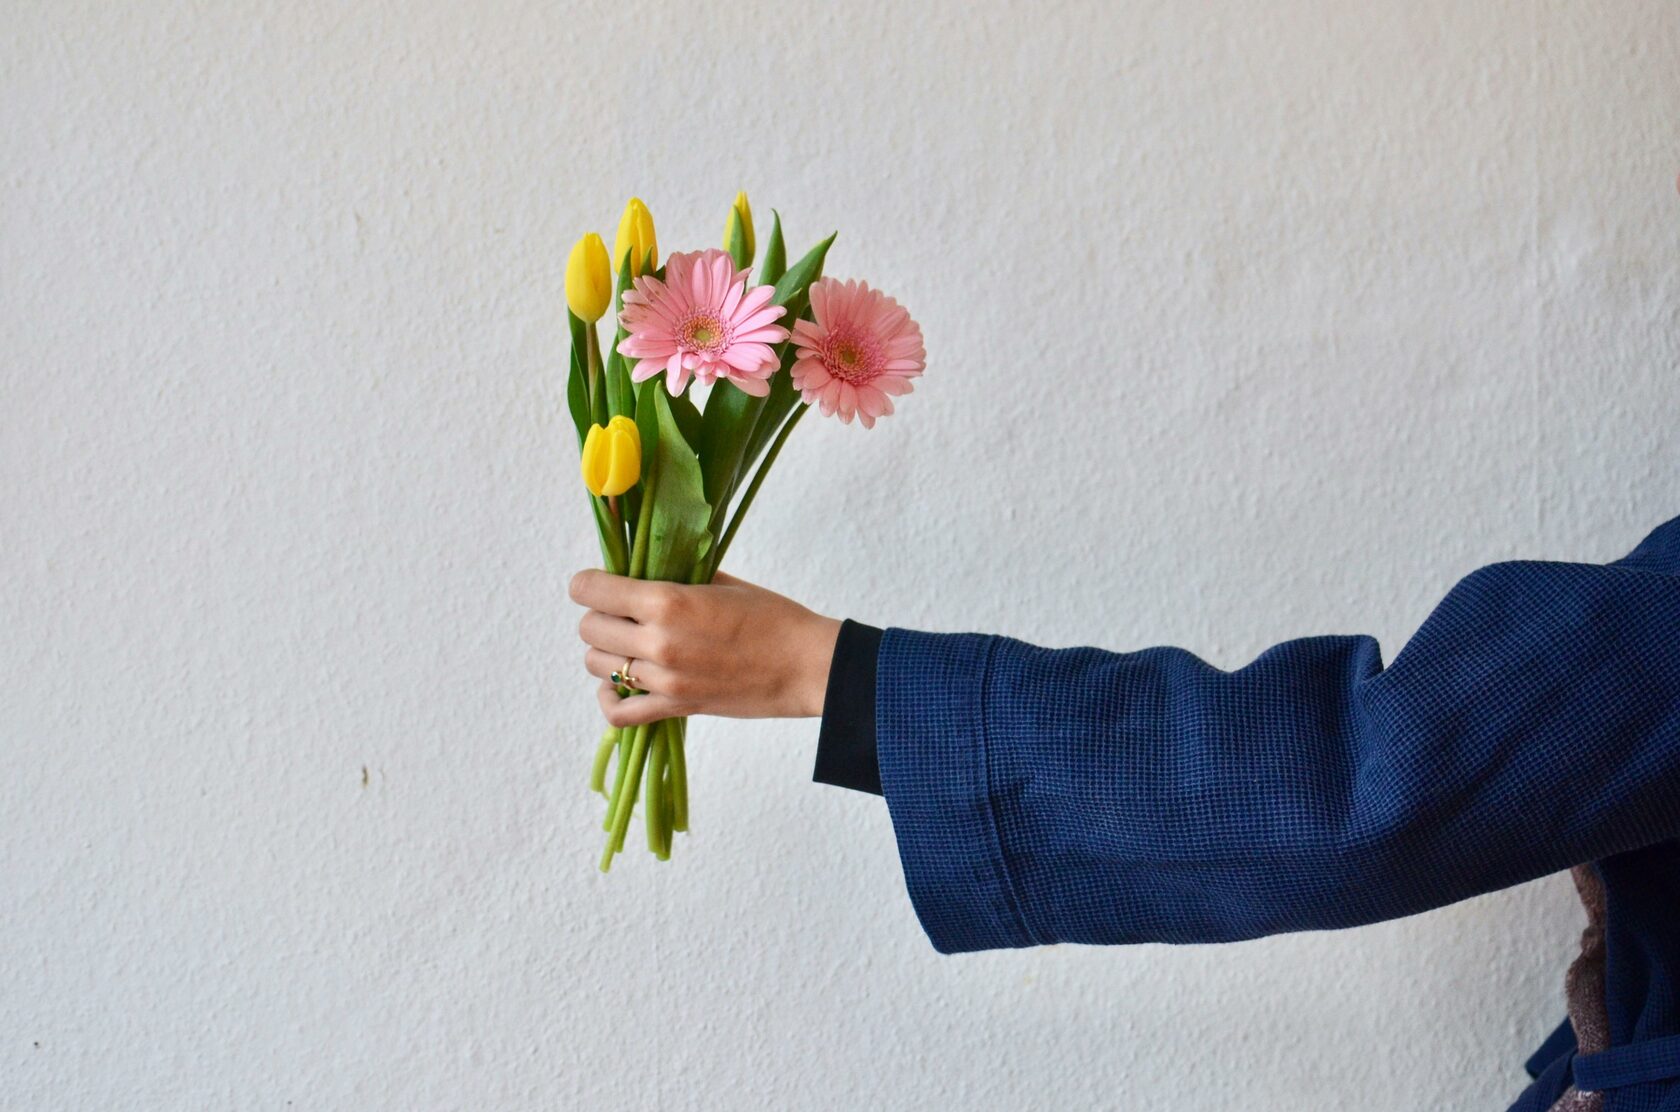 красивых идей: цветы из ткани своими руками с фото